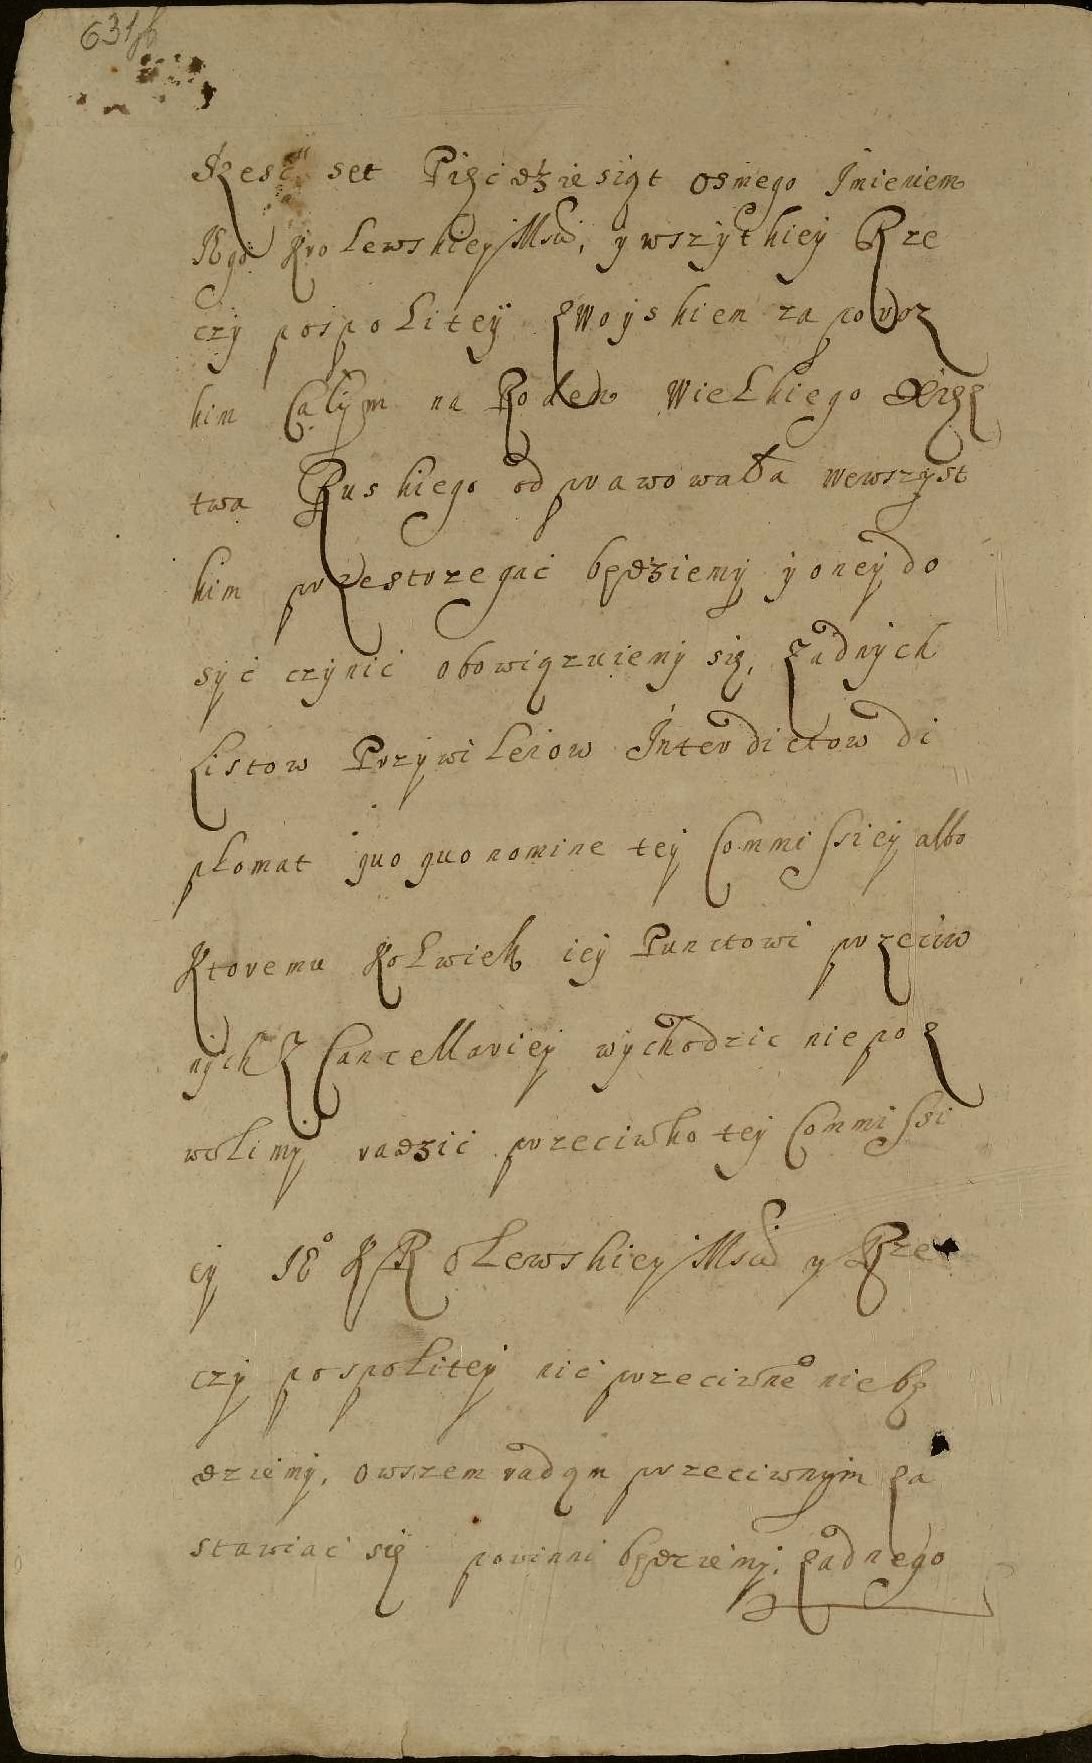 Присяги польського короля Яна-Казимира і сенаторів від 10 червня 1659 р. у Варшаві про затвердження Гадяцького договору 1658 р. (перший етап ратифікації). 23 червня 1659 р.